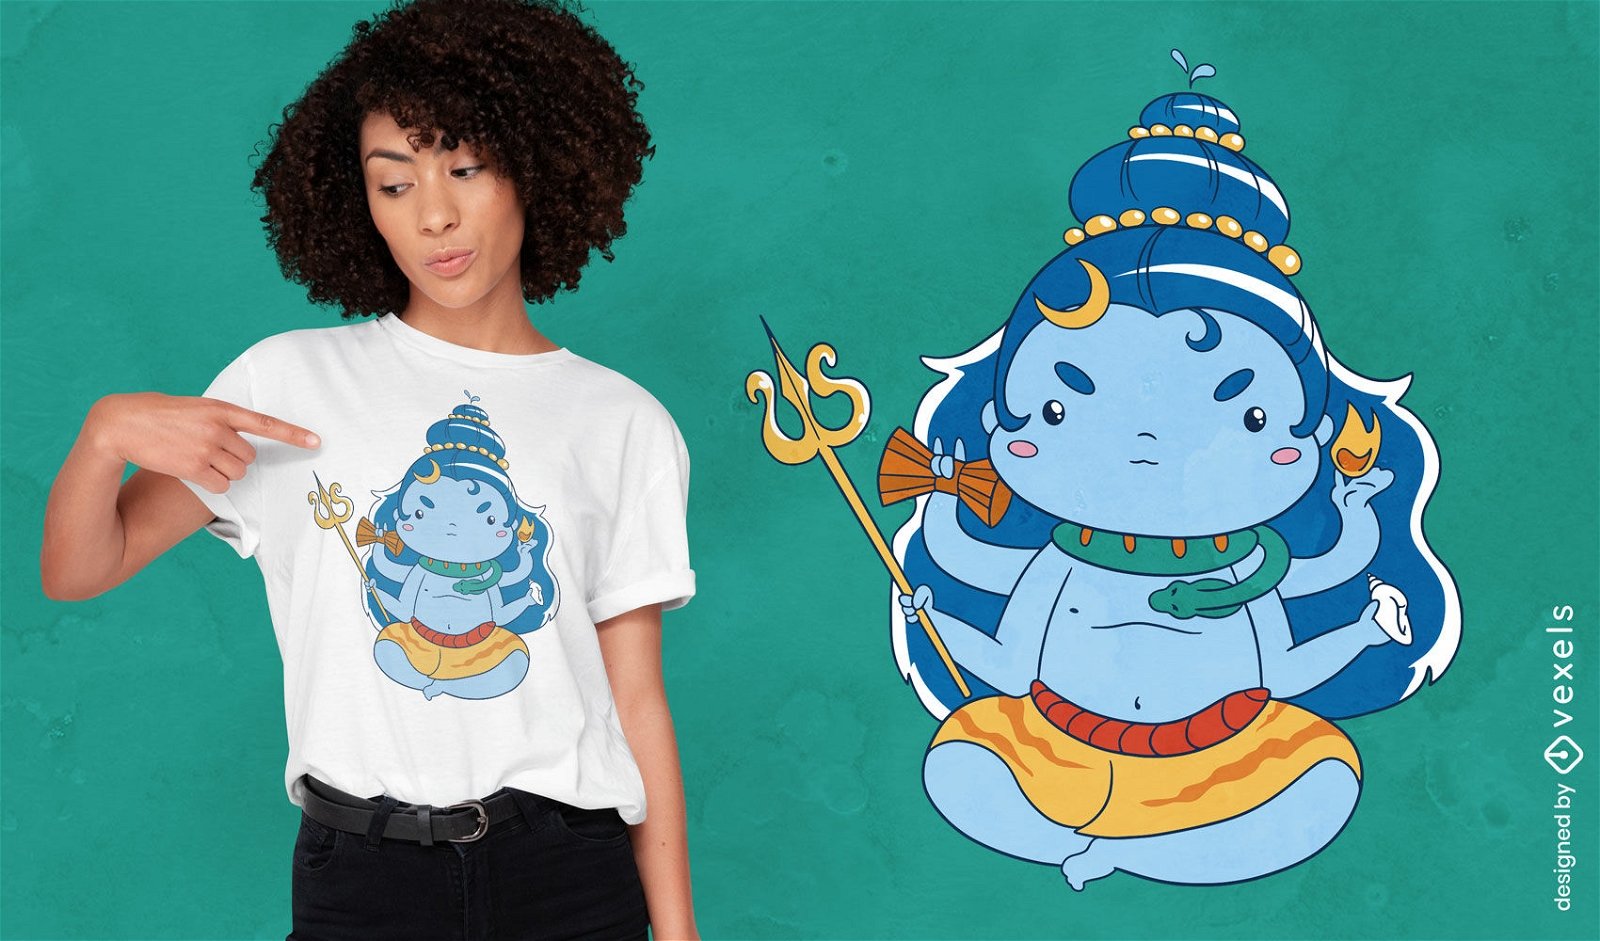 Diseño de camiseta de dibujos animados de la deidad hindú Shiva